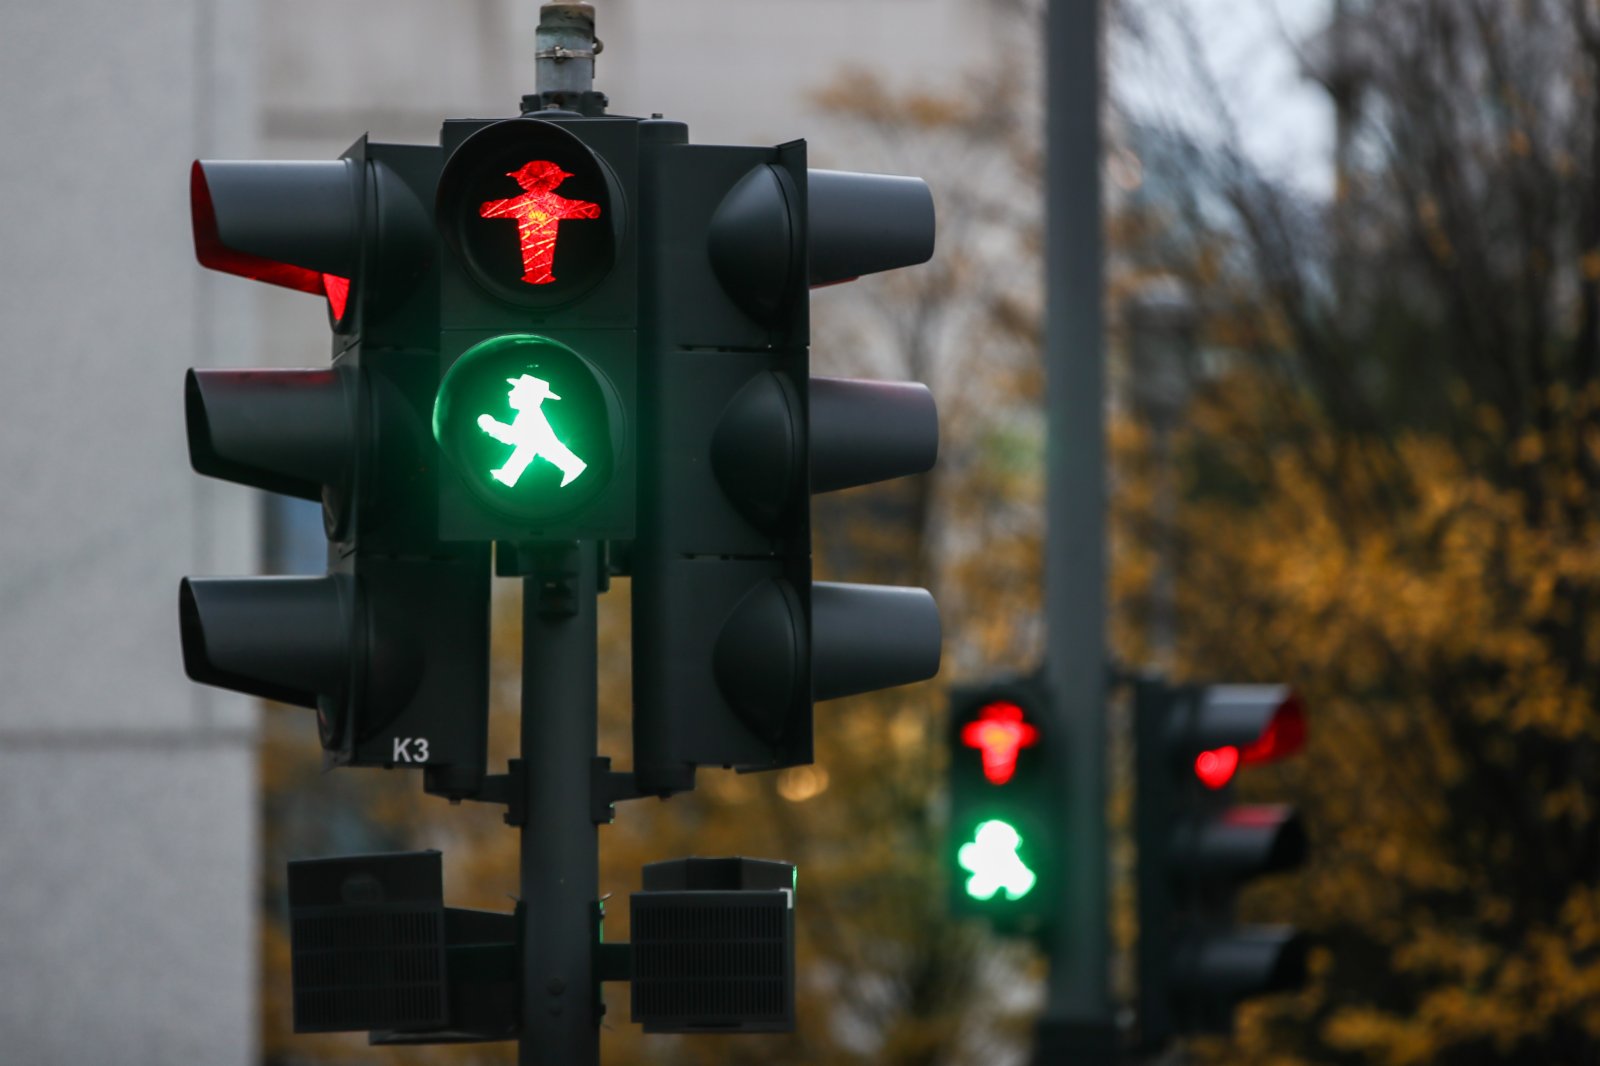 這是11月19日在德國首都柏林拍攝的一座「綠燈小人」雕塑。柏林的人形行人信號燈於1961年由德國交通心理學家卡爾·佩格勞創作，1969年開始投入使用並逐漸普及。其設計的初衷是讓對顏色不敏感的群體更好地識別行人交通信號，同時生動的人物形象更容易被人們接受。此外，這種信號燈的發光面積也比一般的行人信號燈更大，因而更加醒目。時至今日，這種「紅綠燈小人」已經成為了柏林的一種文化符號。（新華社）